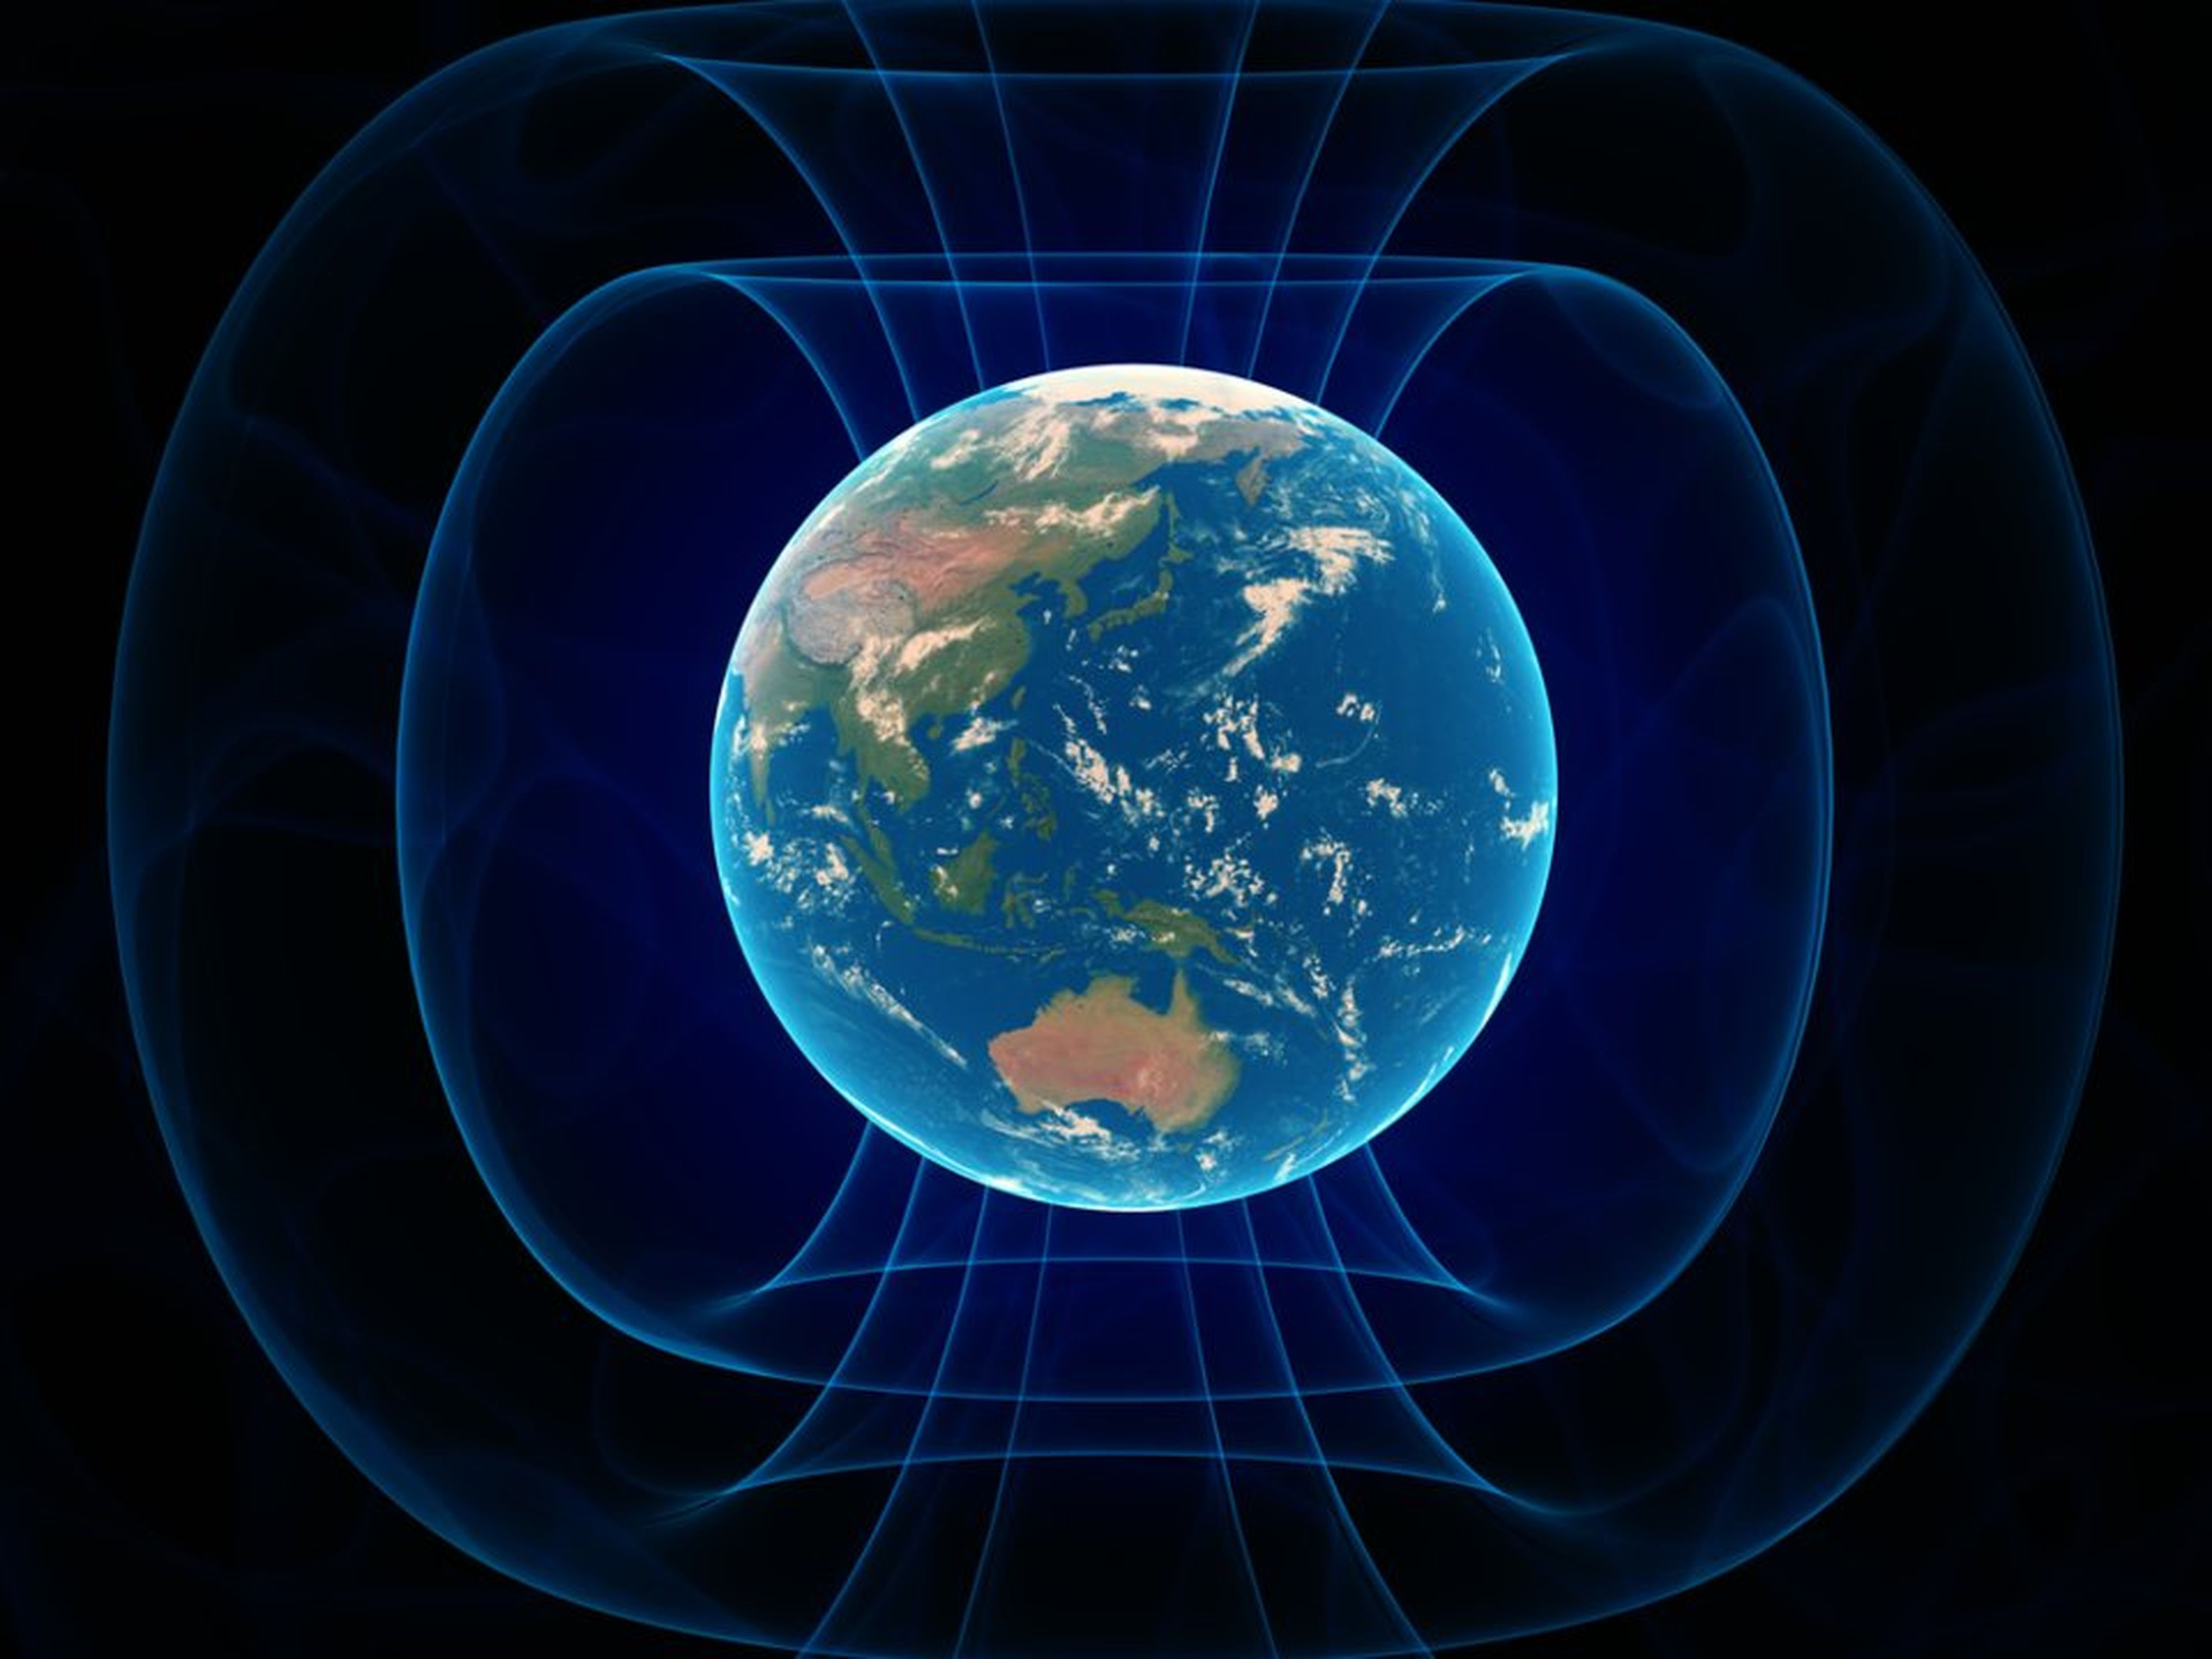 El campo magnético de la Tierra está anclado por los polos magnéticos norte y sur.